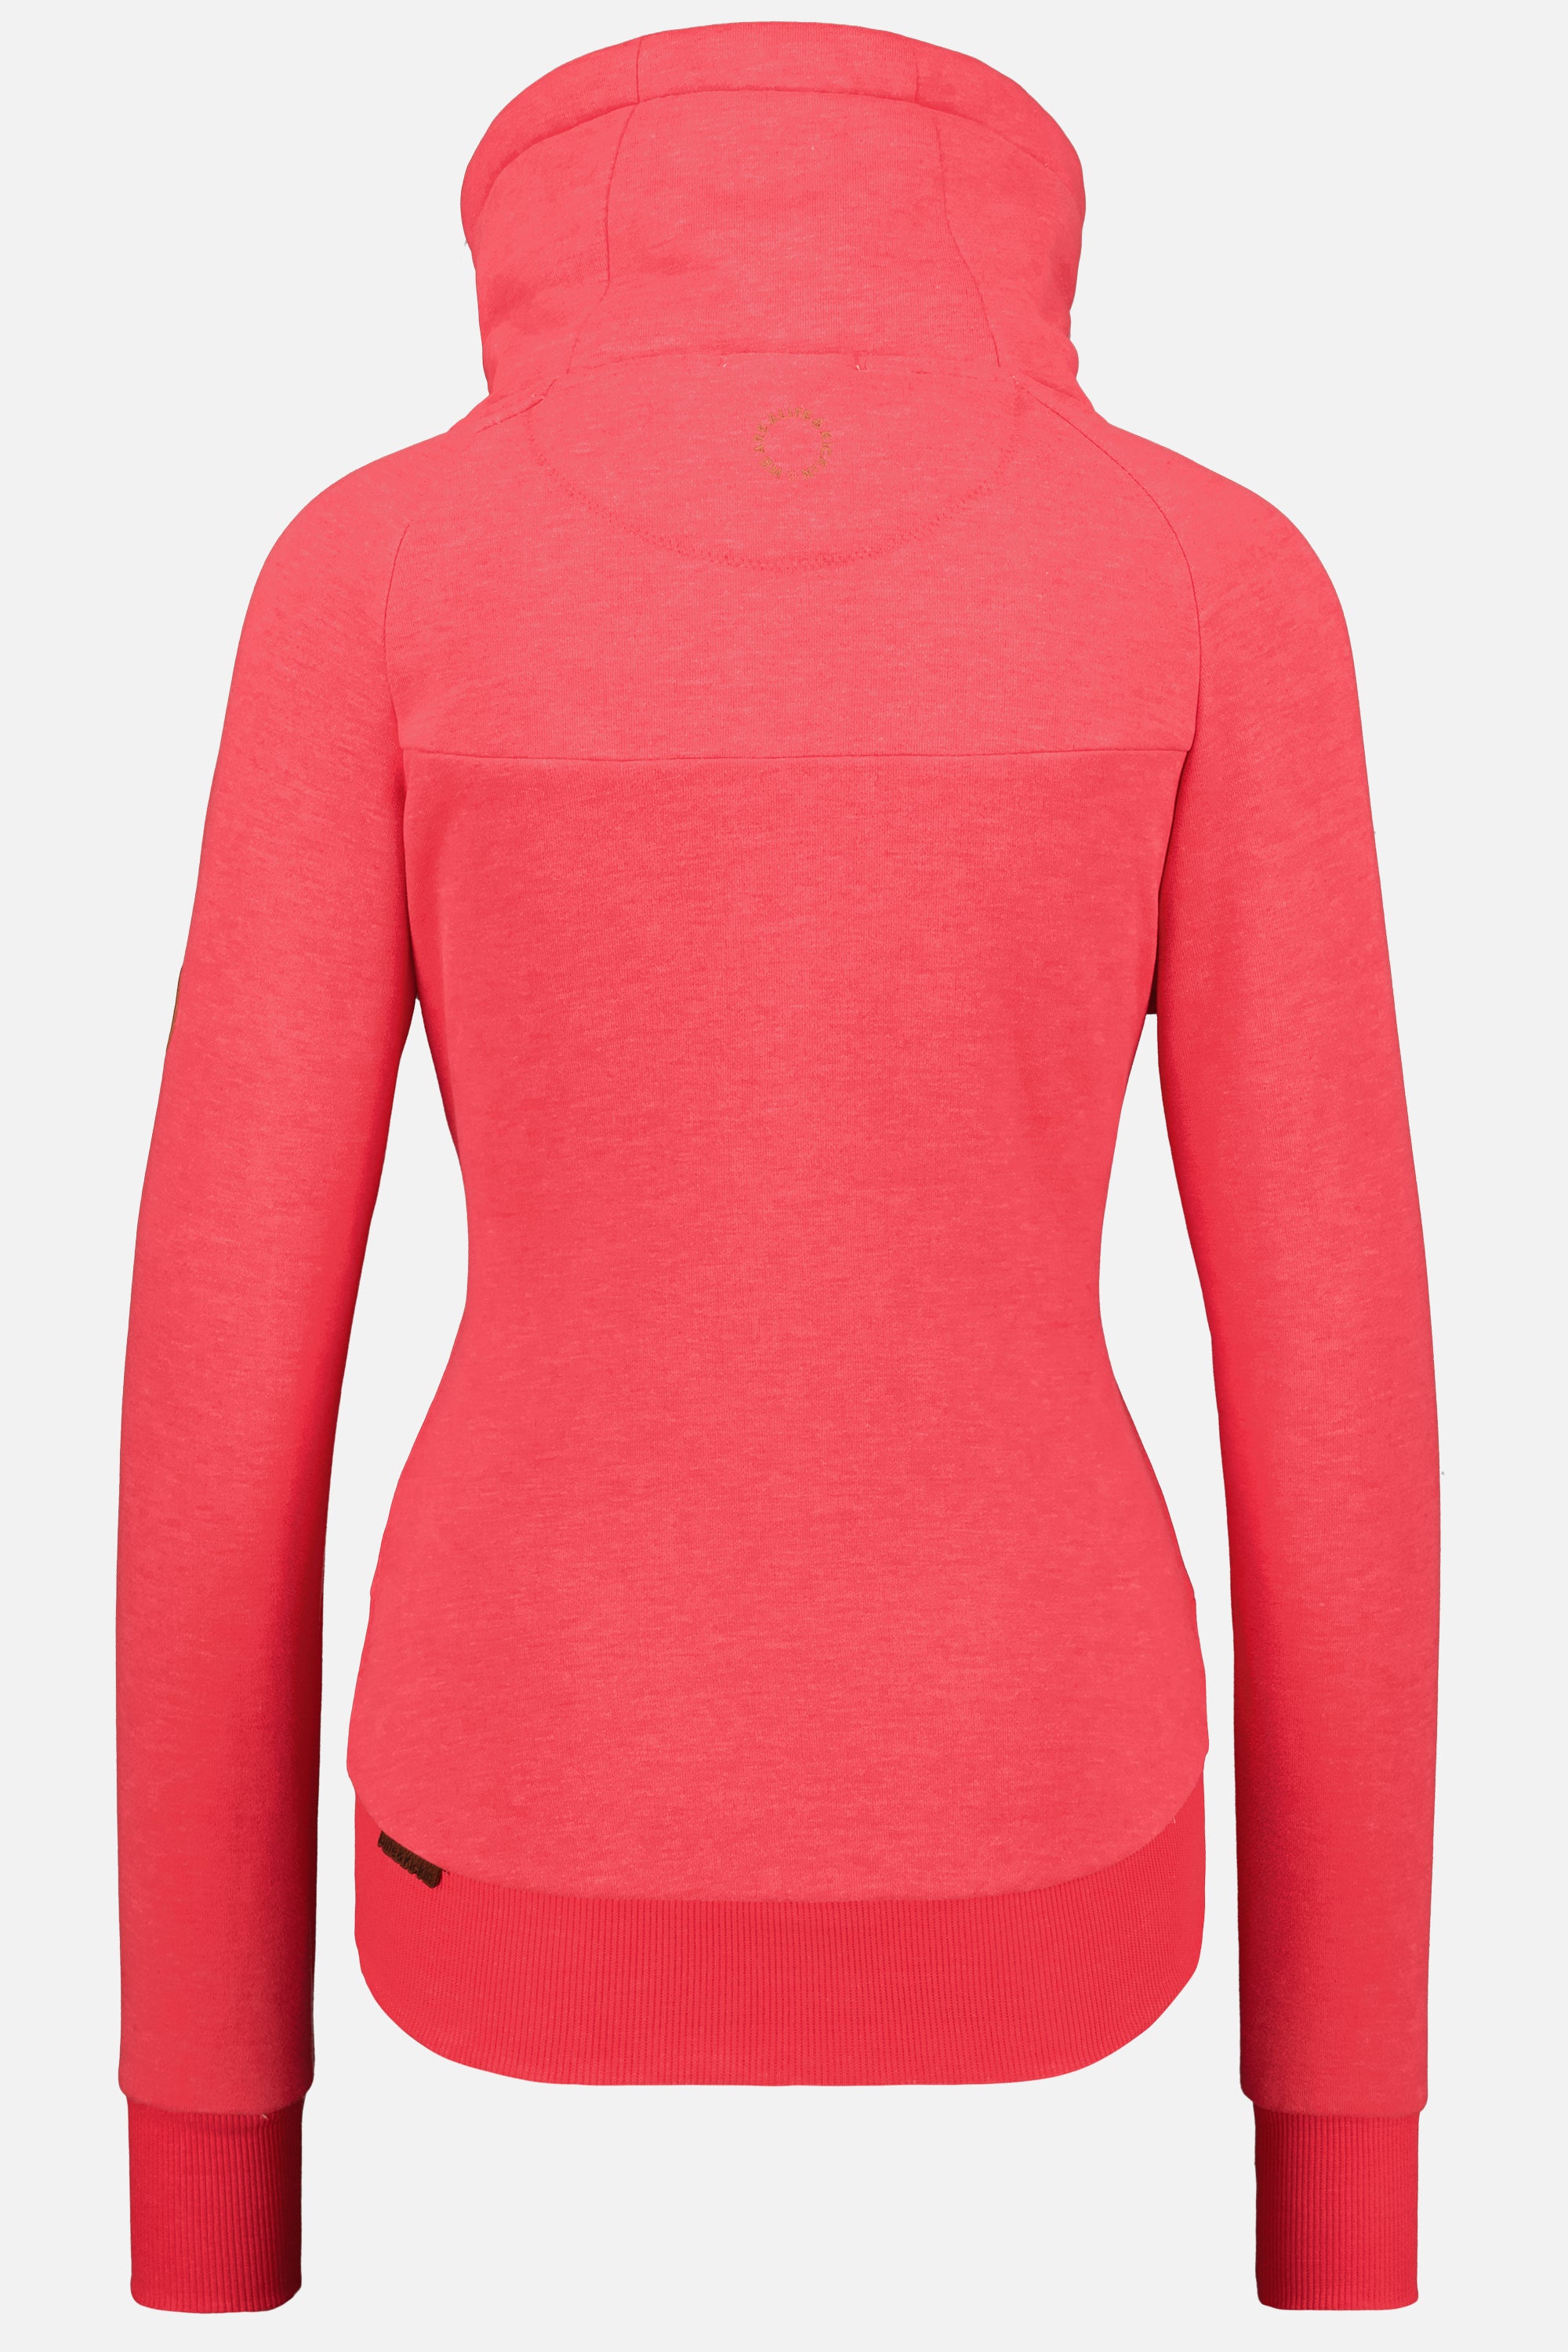 Damen Sweatshirt VioletAK A zum wohlfühlen Rot